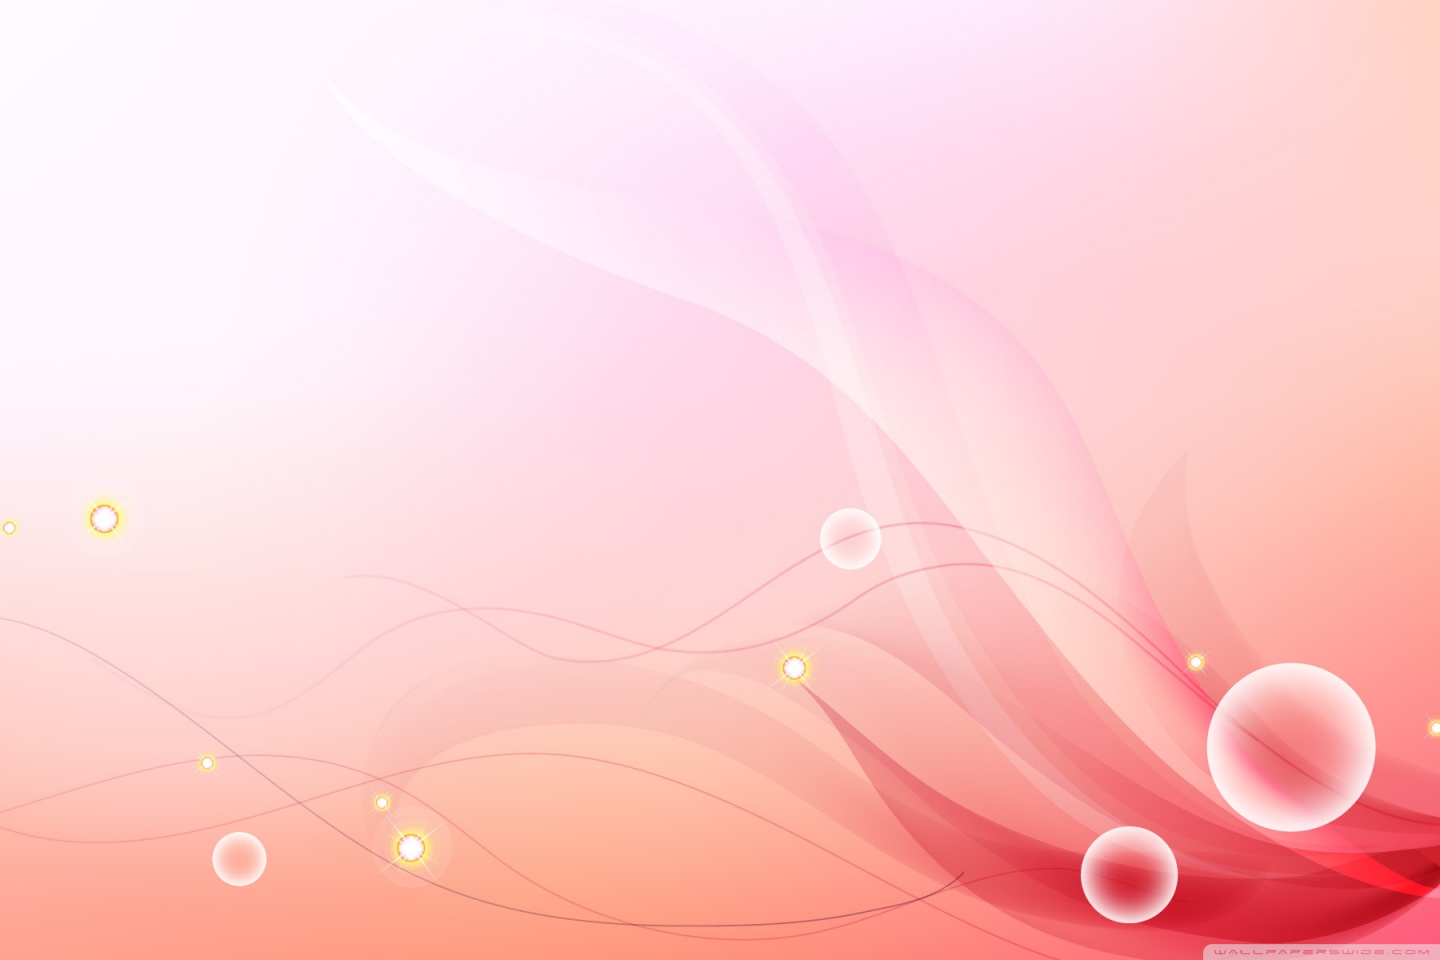 明るい色の壁紙,ピンク,ライン,グラフィックデザイン,図,桃